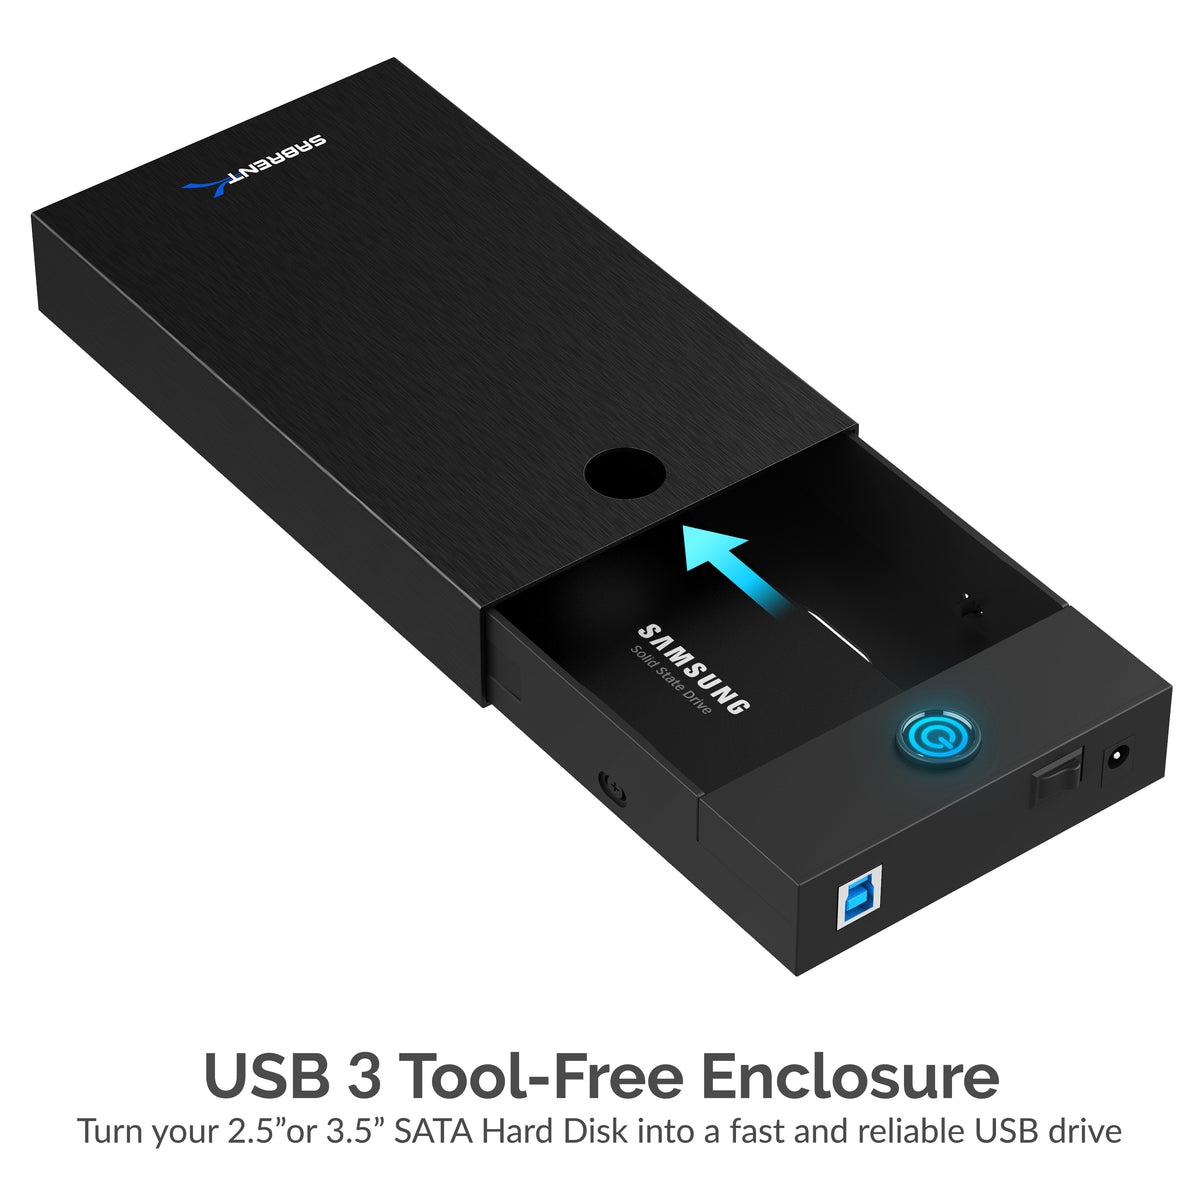 USB 3.0 Tool-Free Enclosure for 2.5” and 3.5” Internal SATA Hard Drives